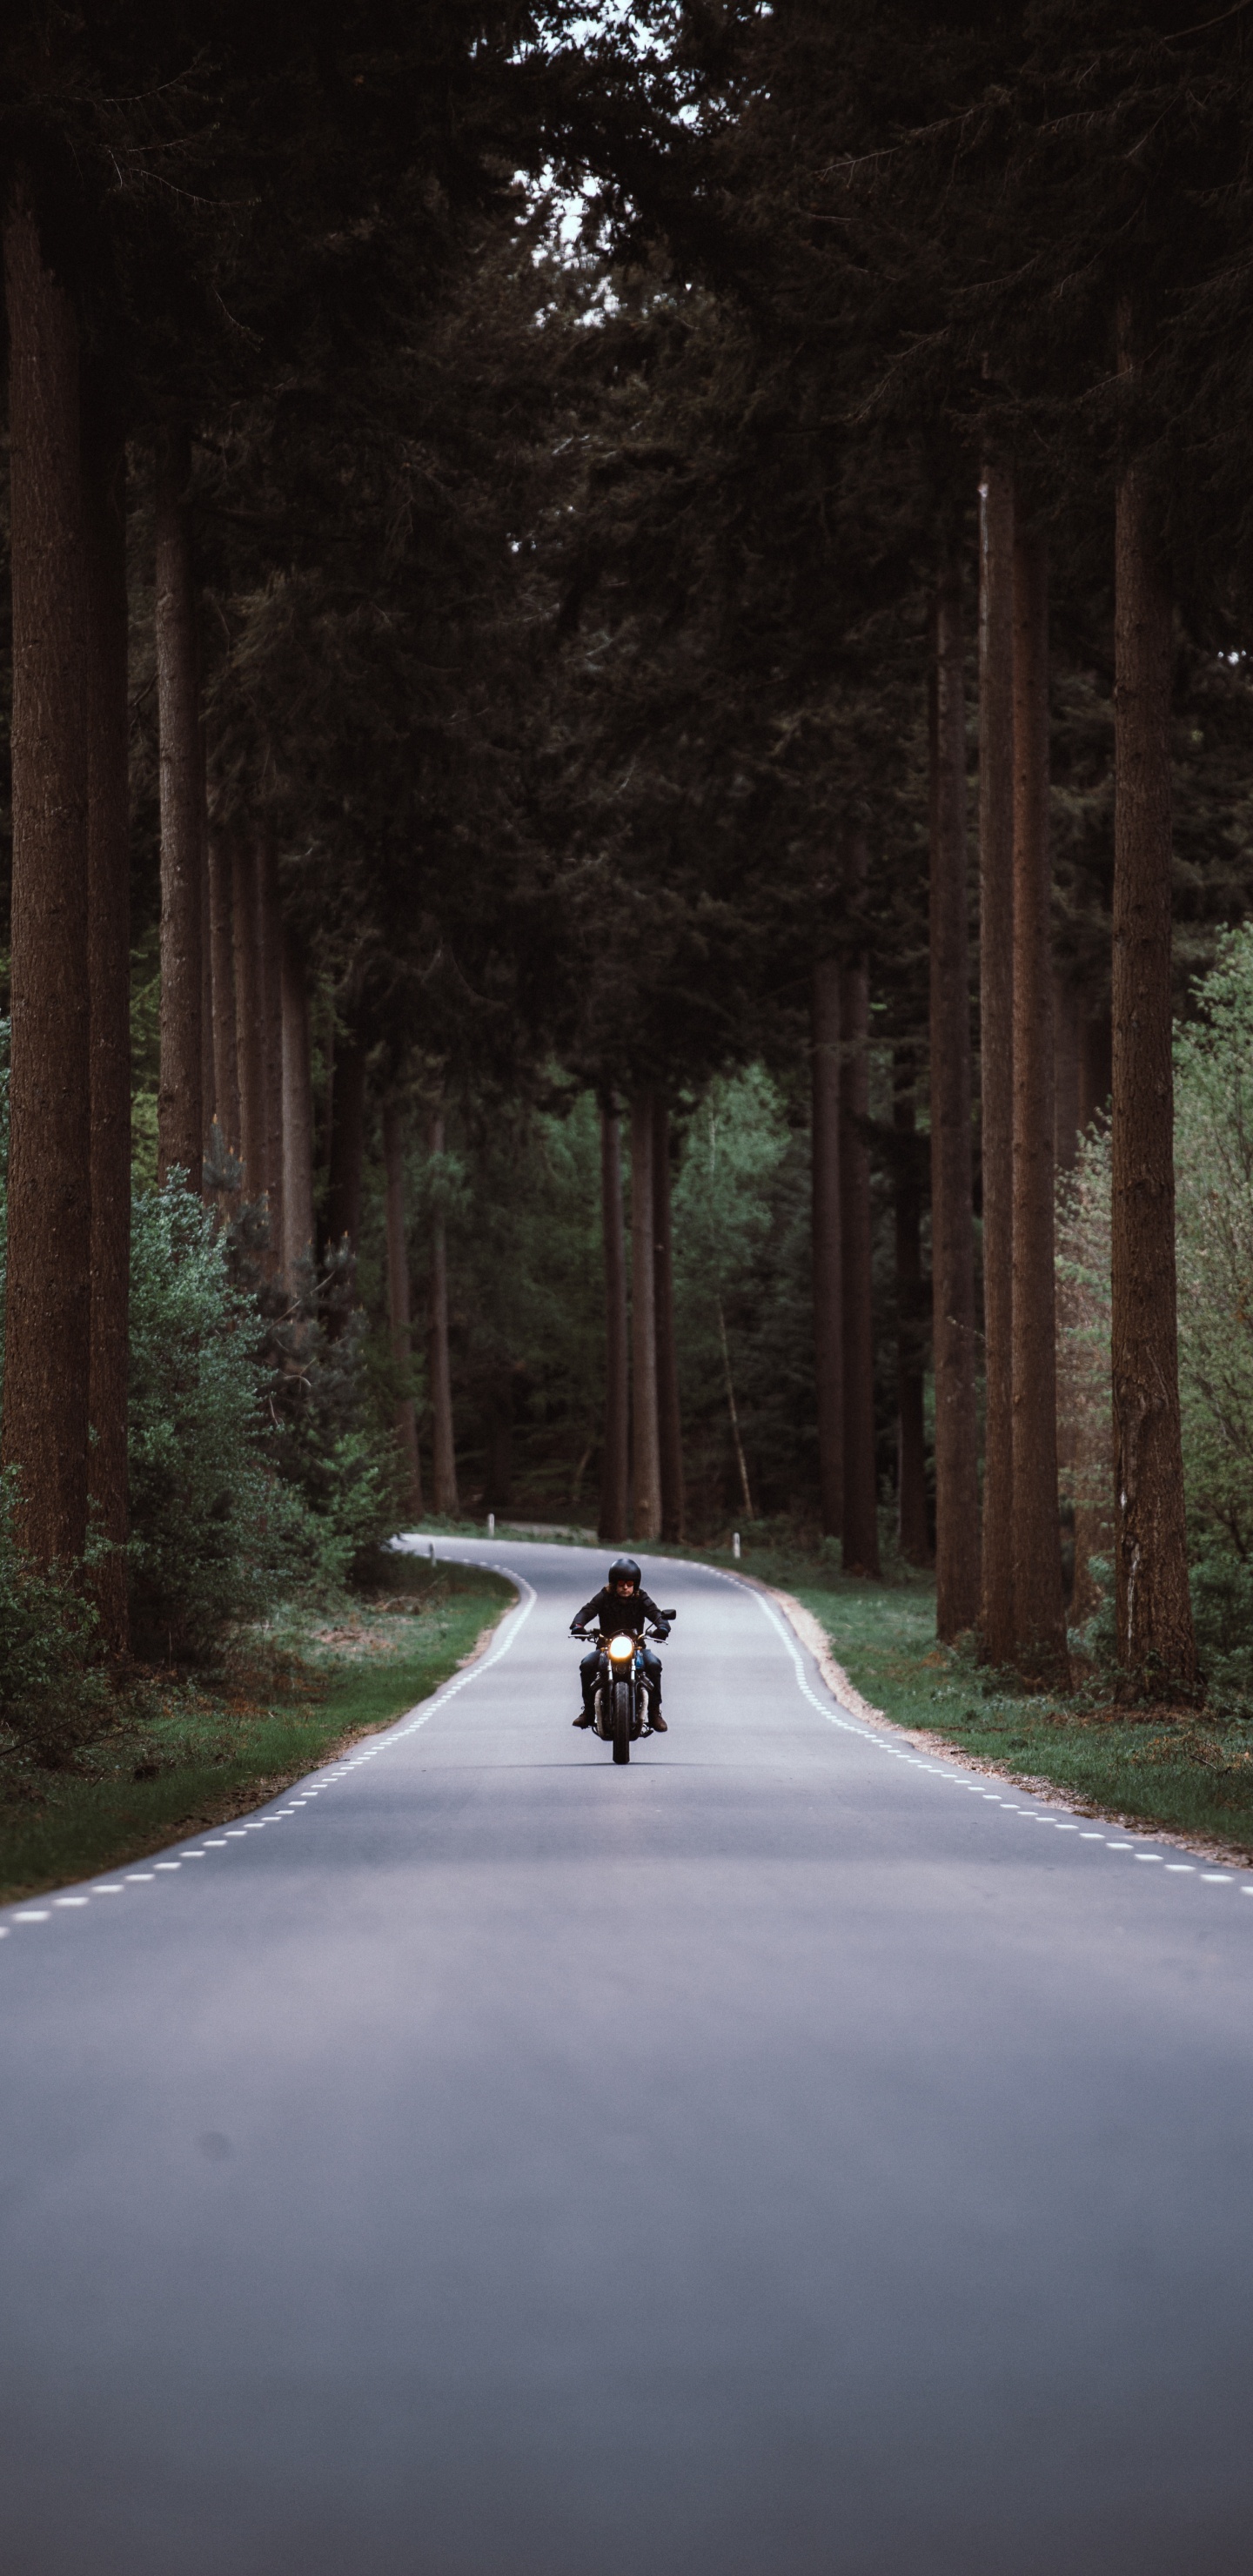 Persona en Motocicleta en la Carretera Entre Árboles Durante el Día. Wallpaper in 1440x2960 Resolution